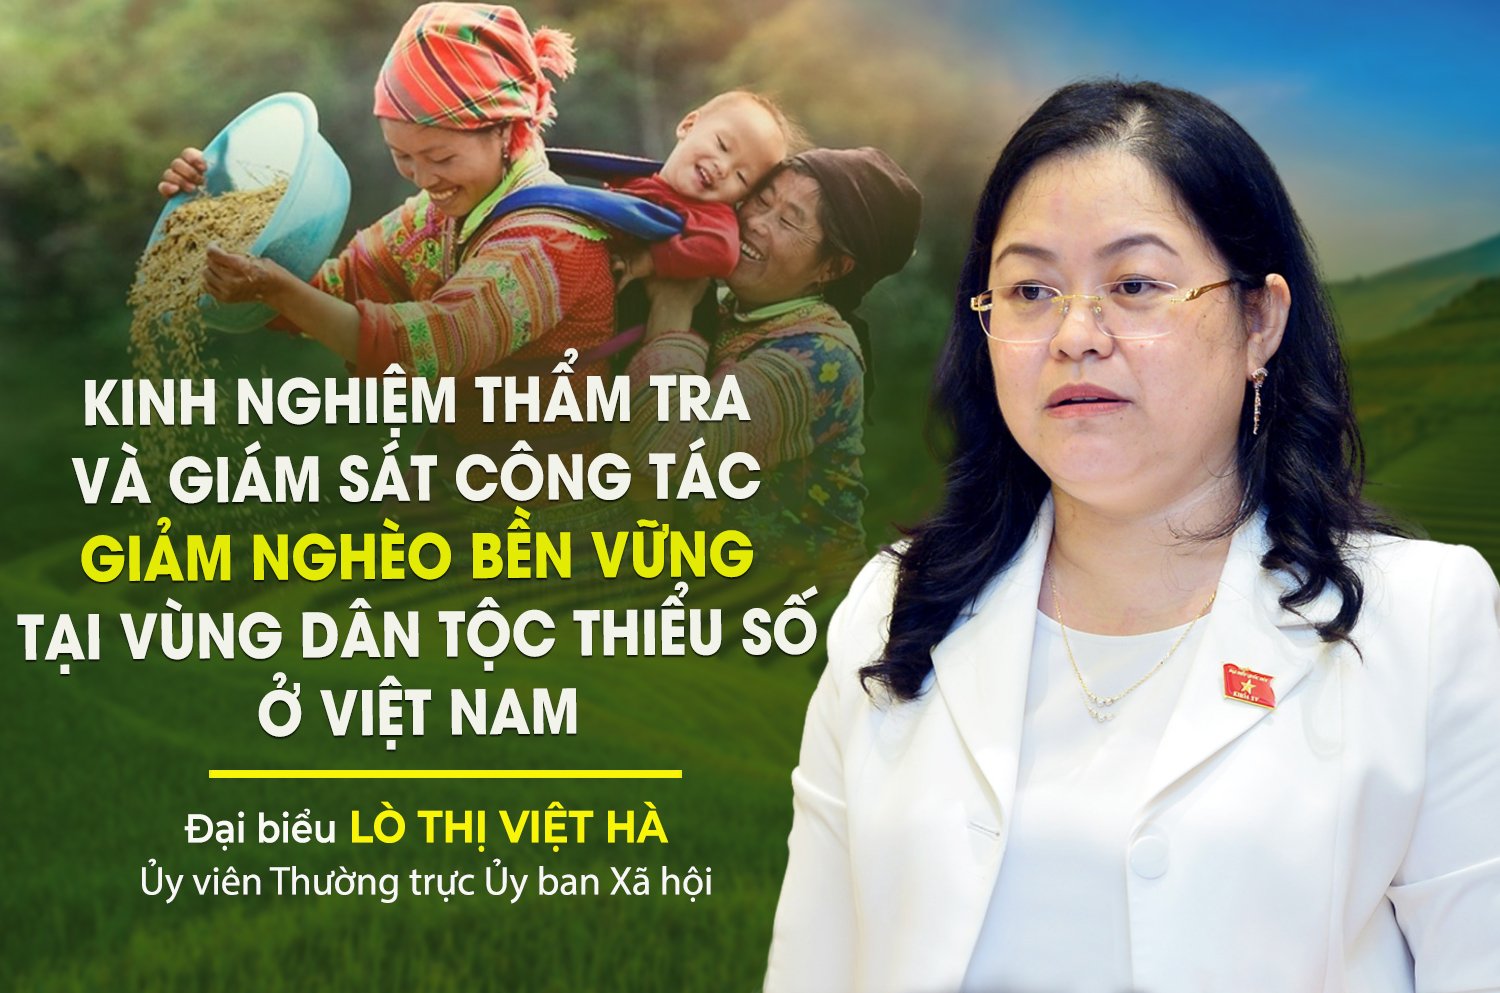 Kinh nghiệm thẩm tra và giám sát công tác giảm nghèo bền vững tại vùng dân tộc thiểu số ở Việt Nam